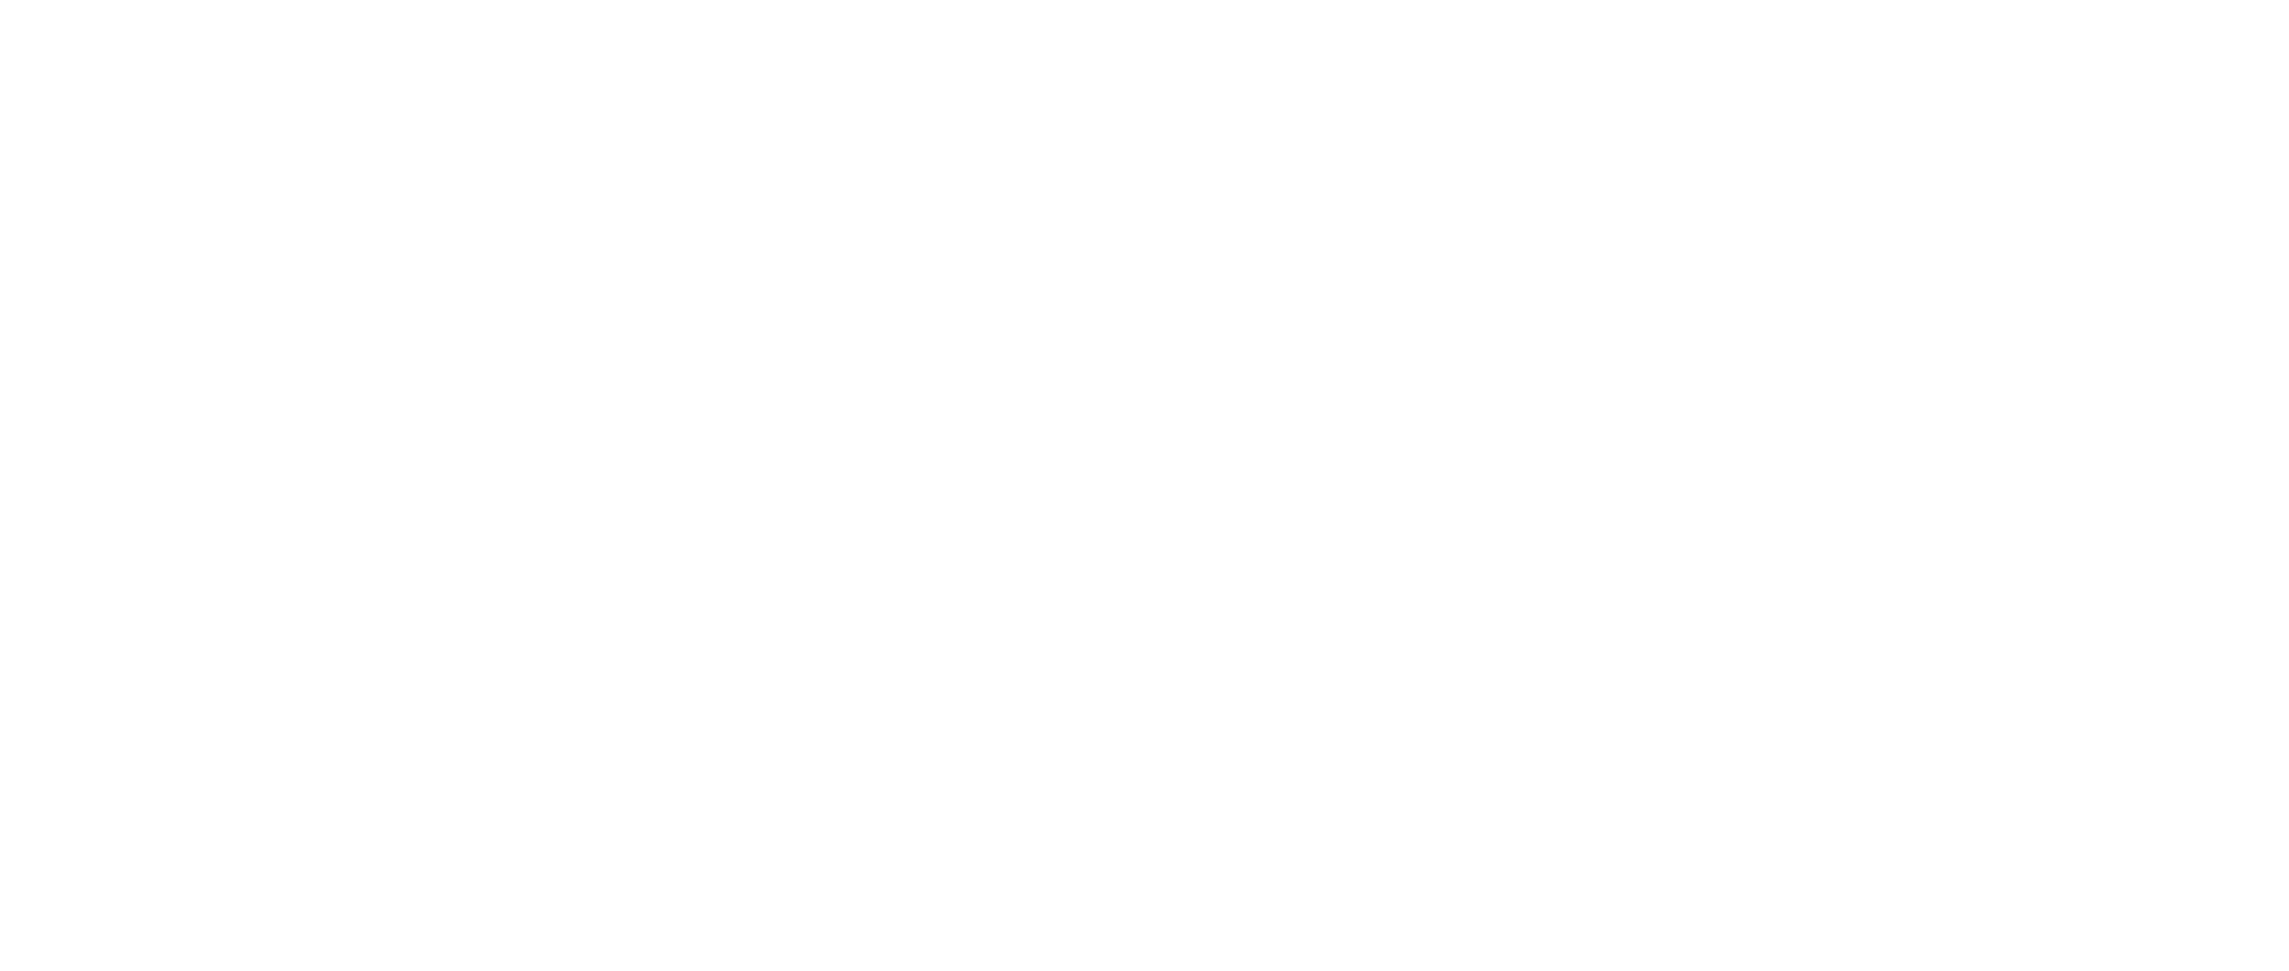 O Verdadeiro Black Friday é na